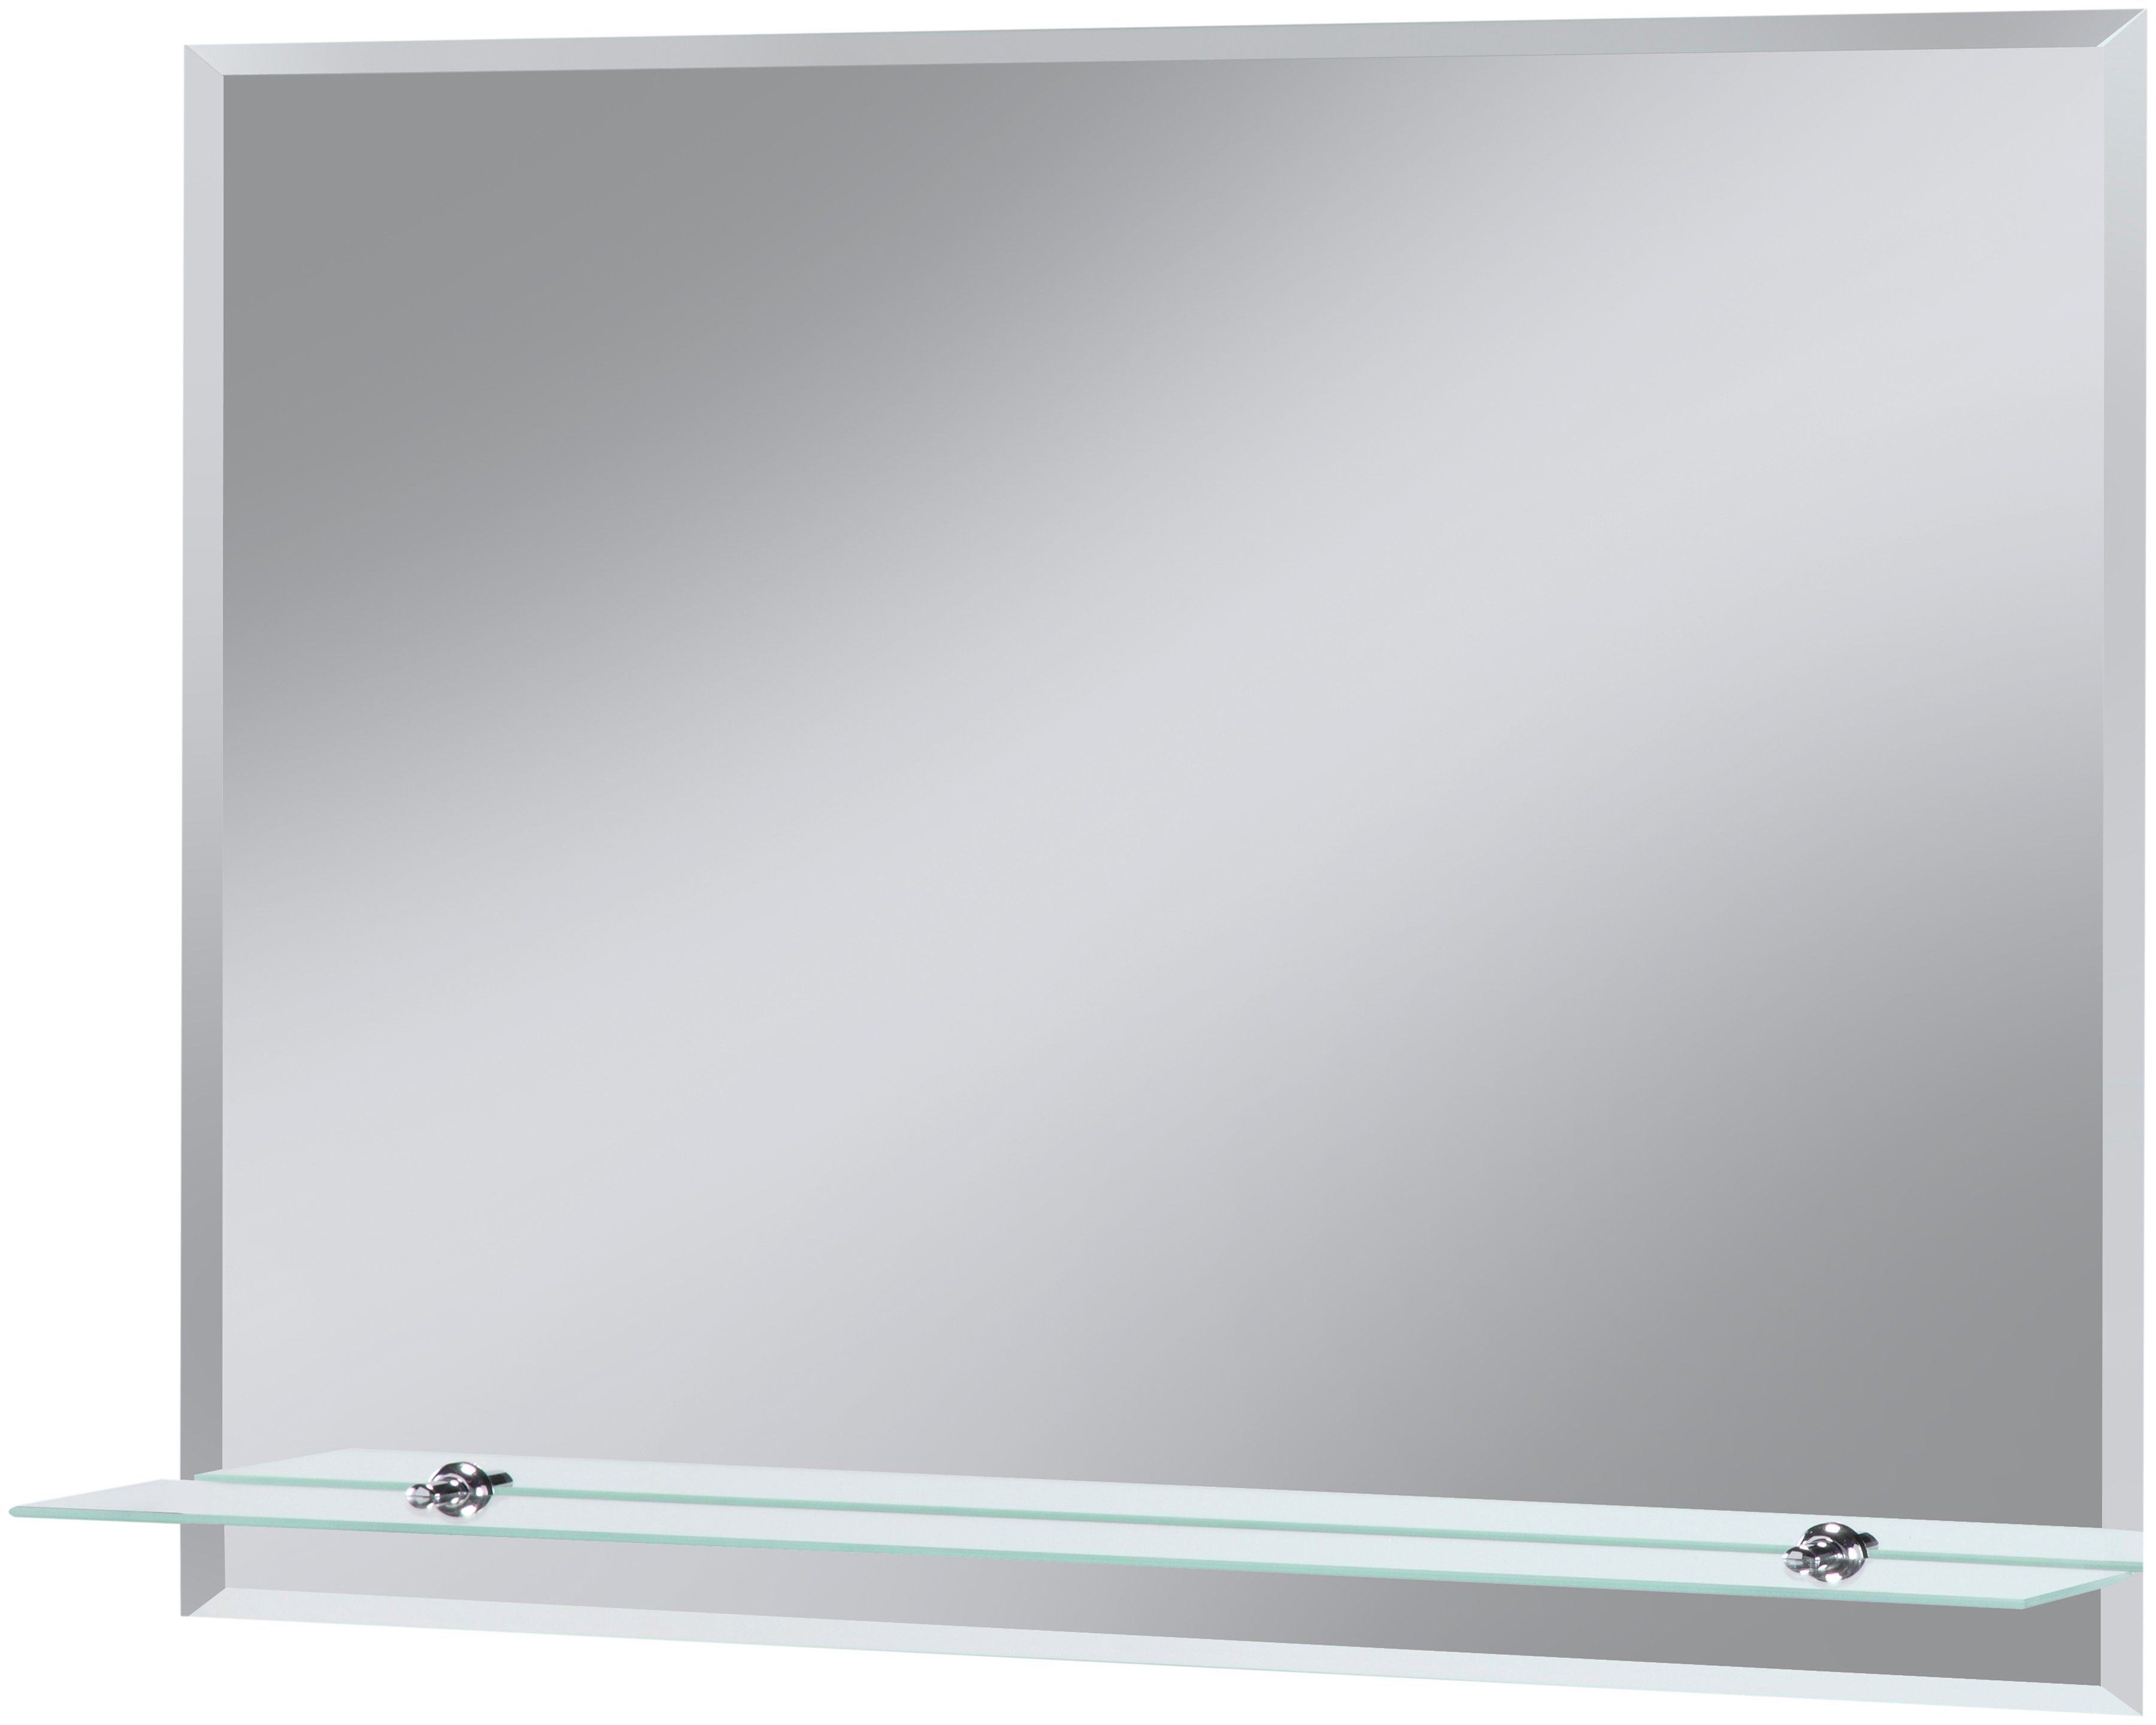 Spiegel Mit Ablage Girona 60 Und 80 Cm Breit Beleuchtung Wandspiegel Badspiegel Weiss Sieper 60